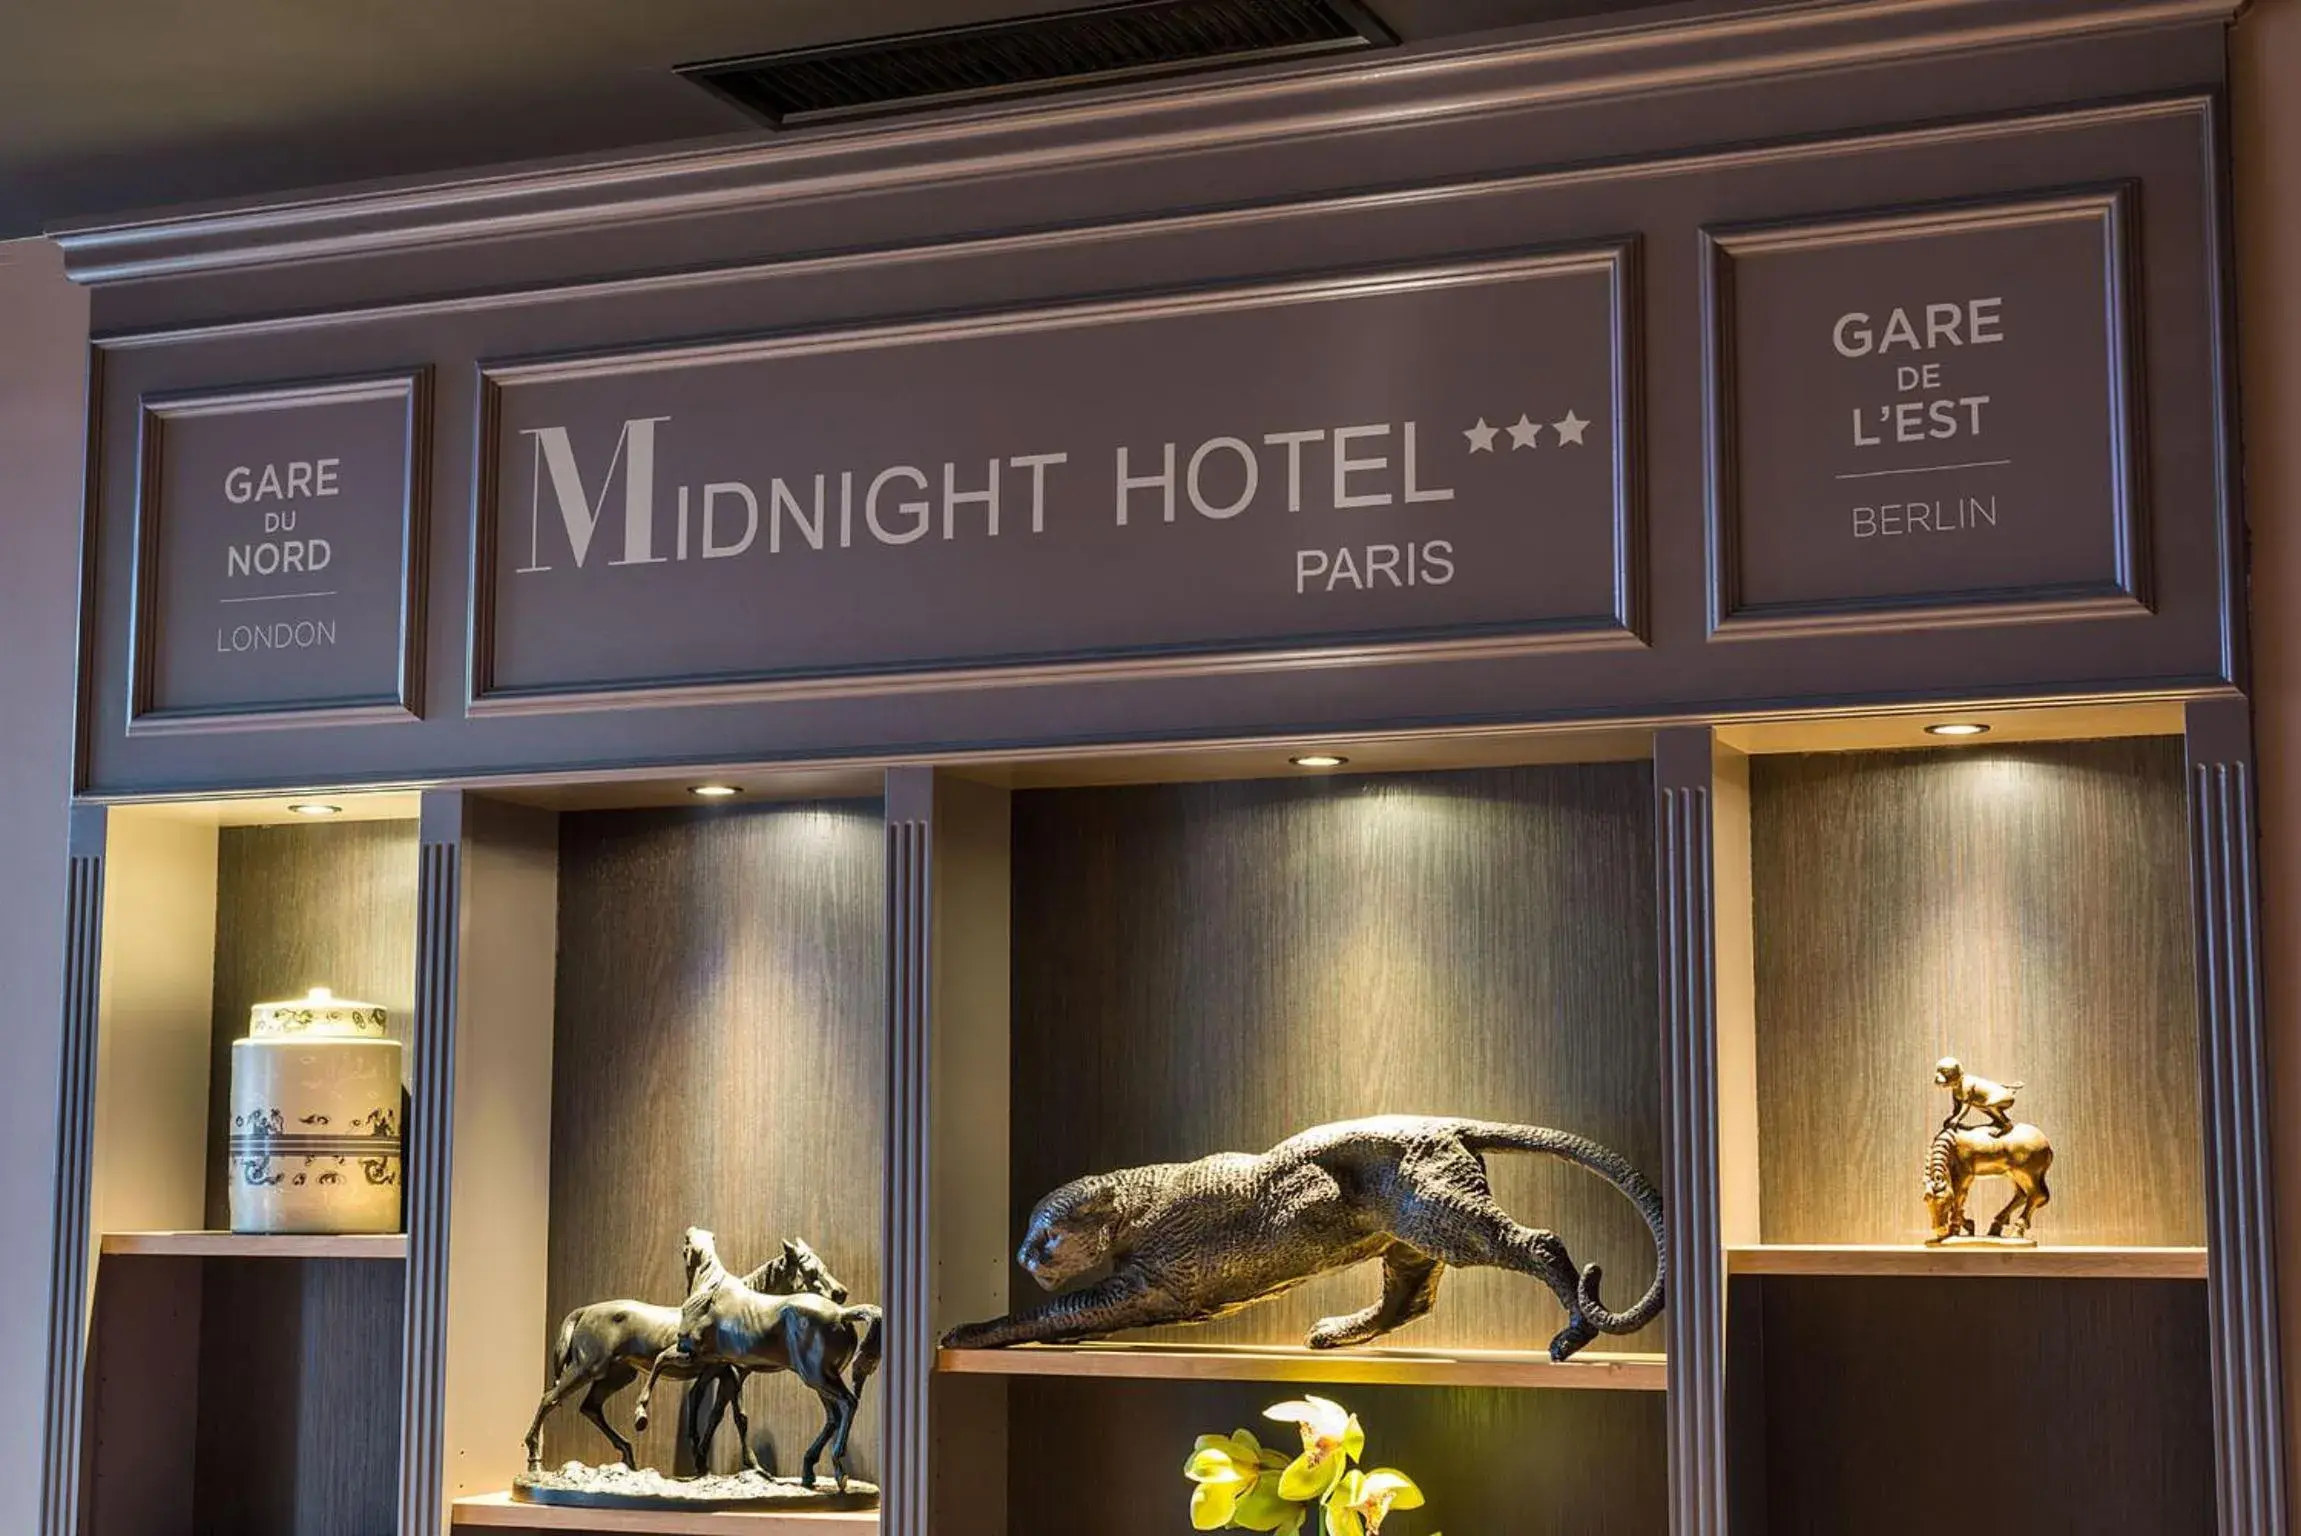 Decorative detail in Midnight Hotel Paris